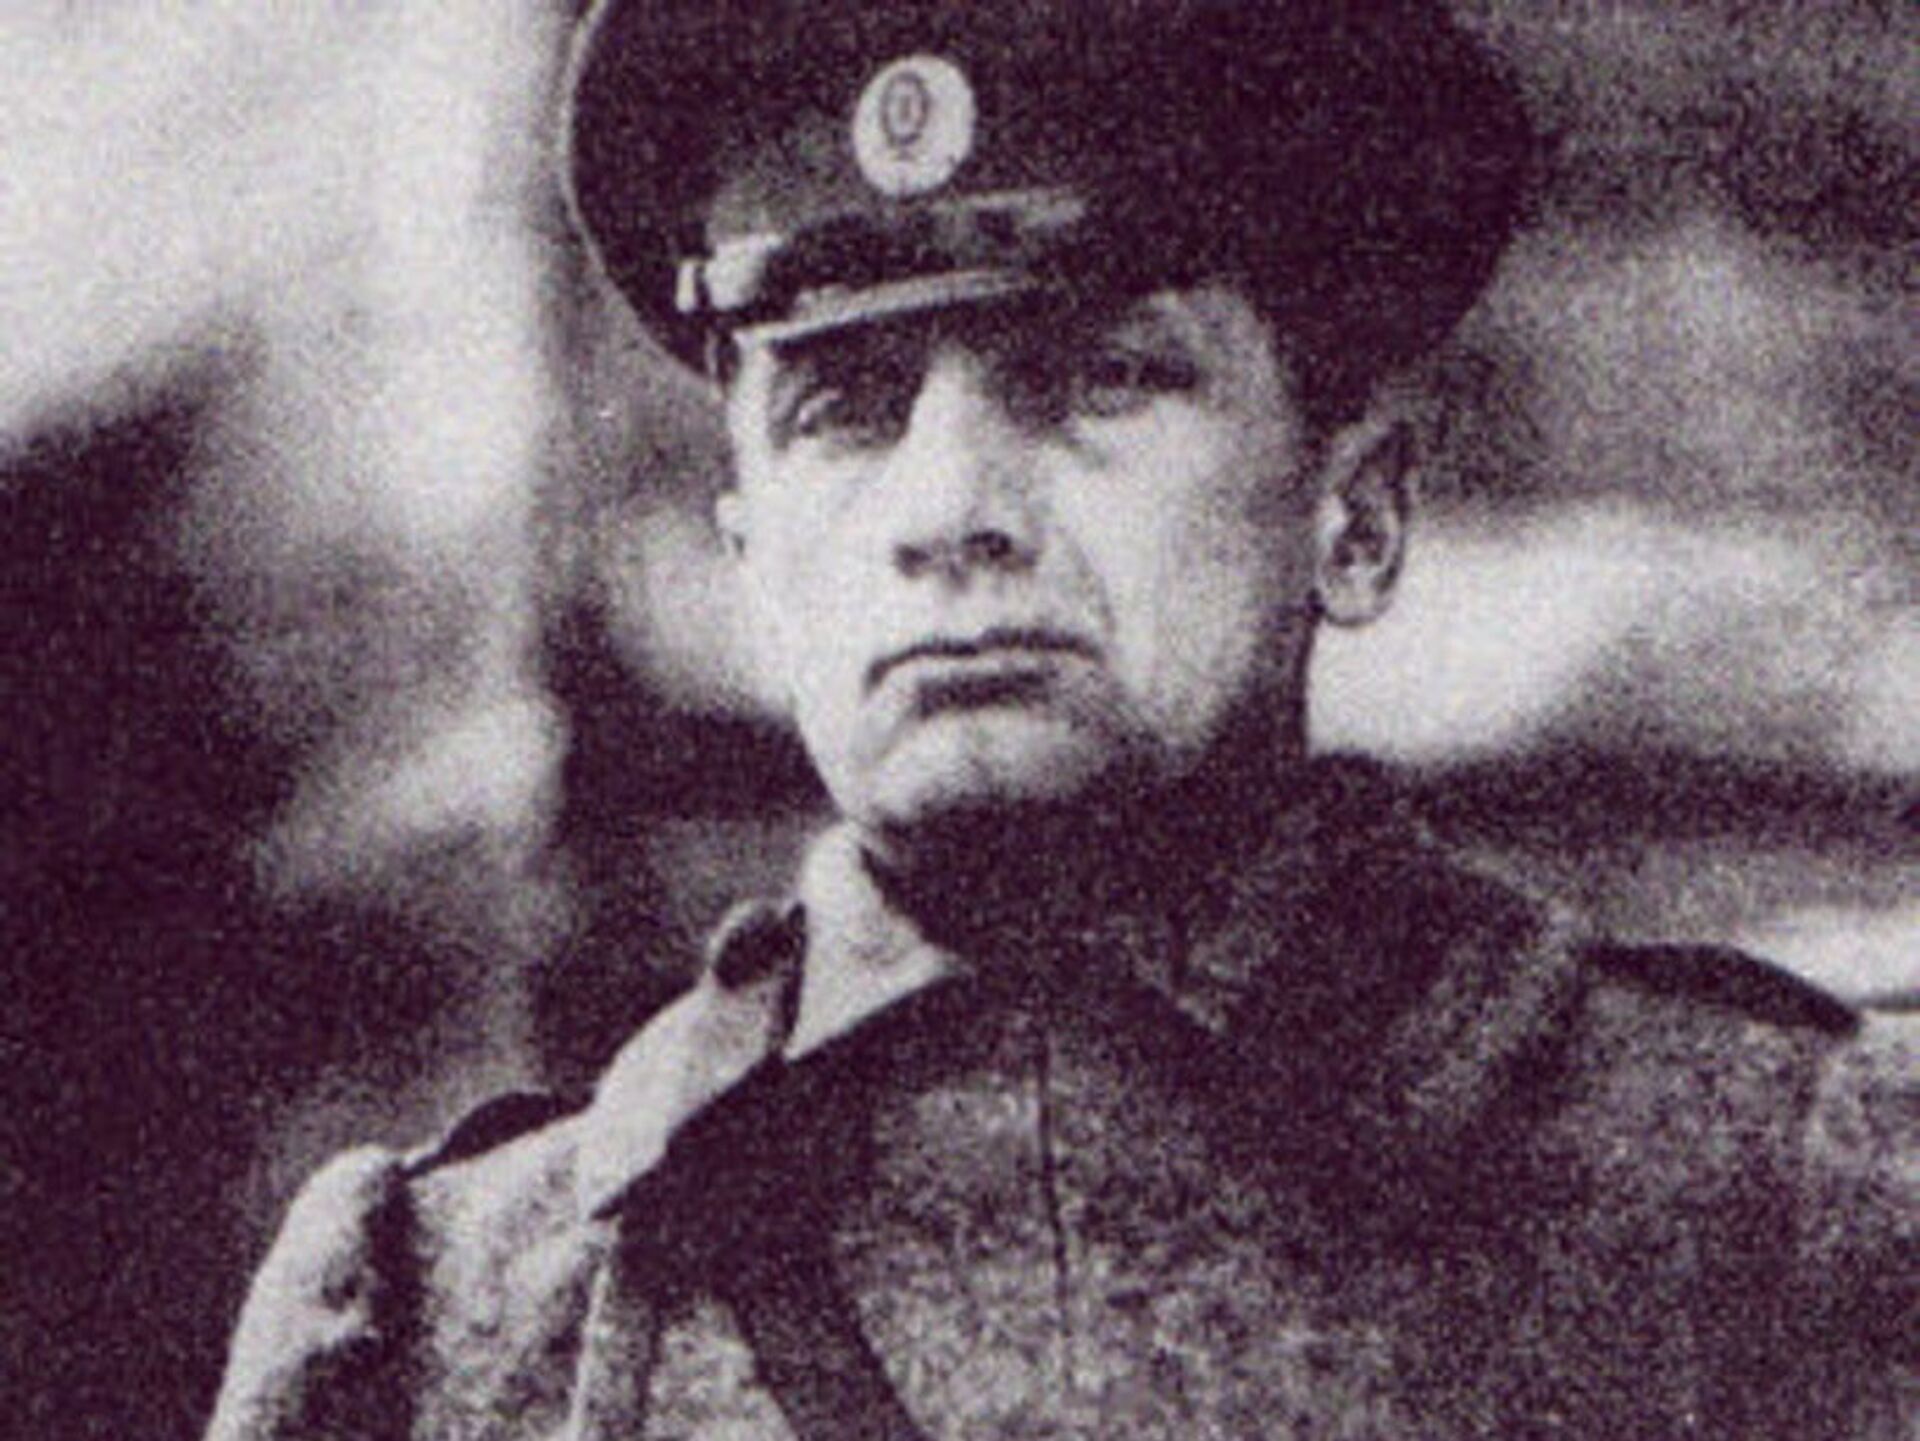 Адмирал Колчак перед расстрелом Иркутск 1920